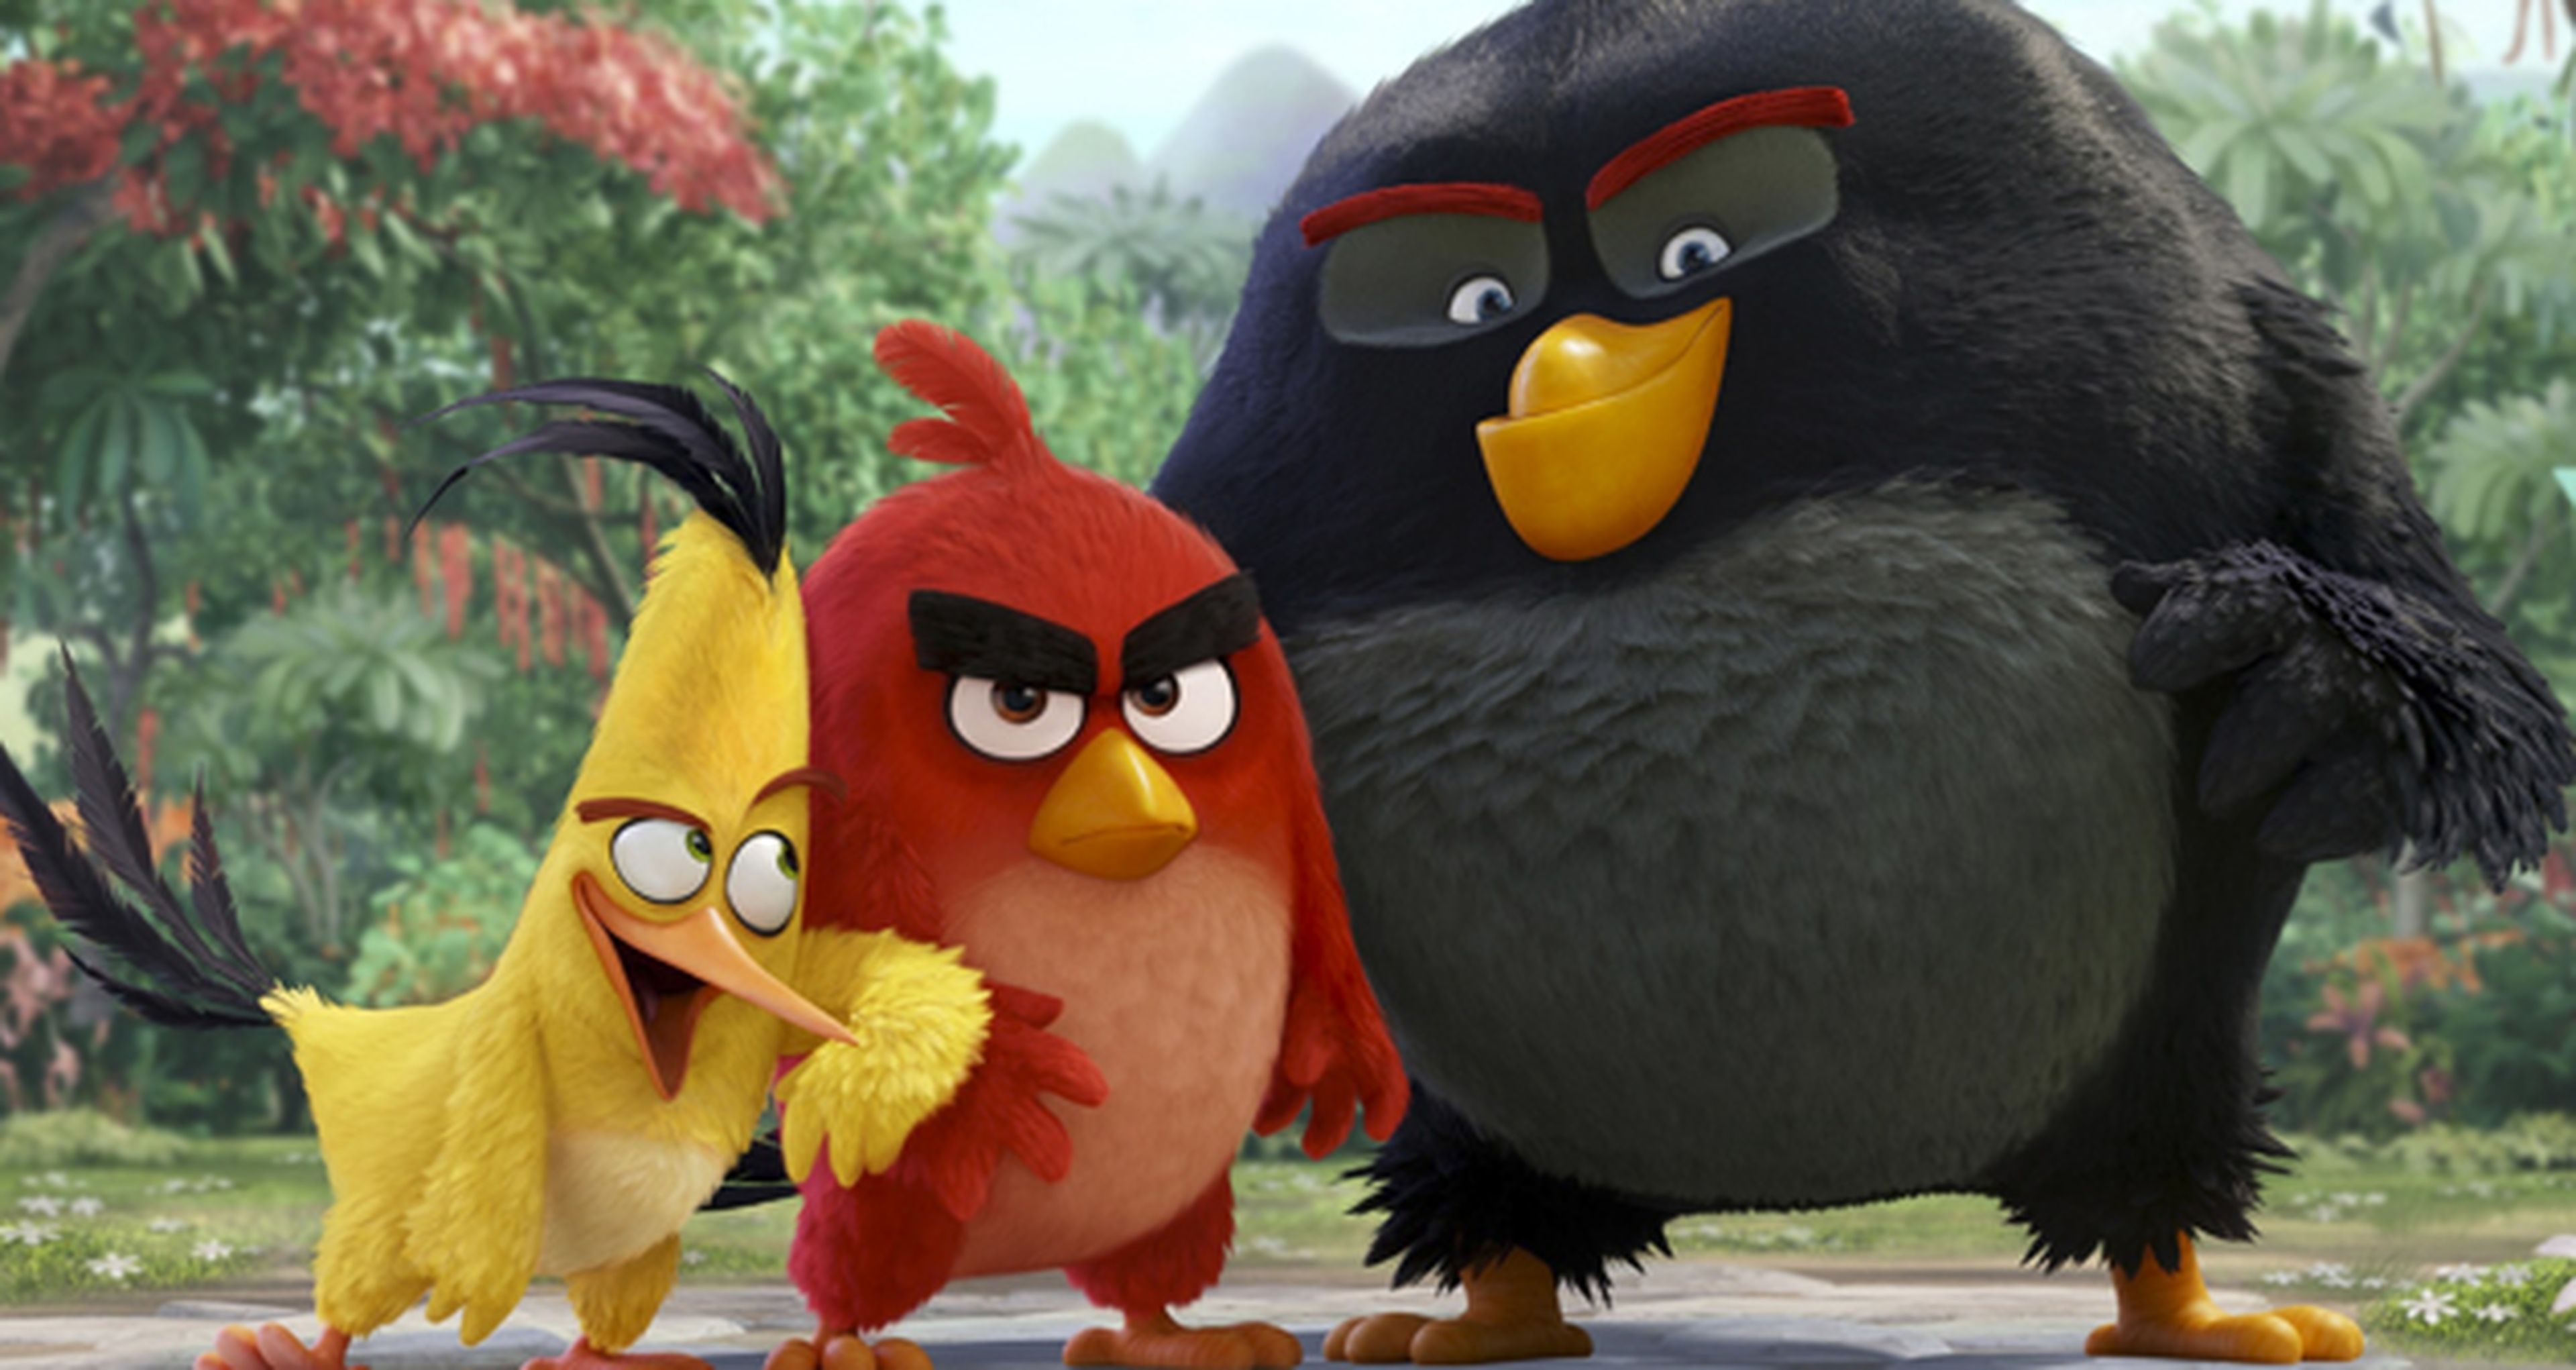 Angry Birds - Crítica de la película basada en el juego de Rovio